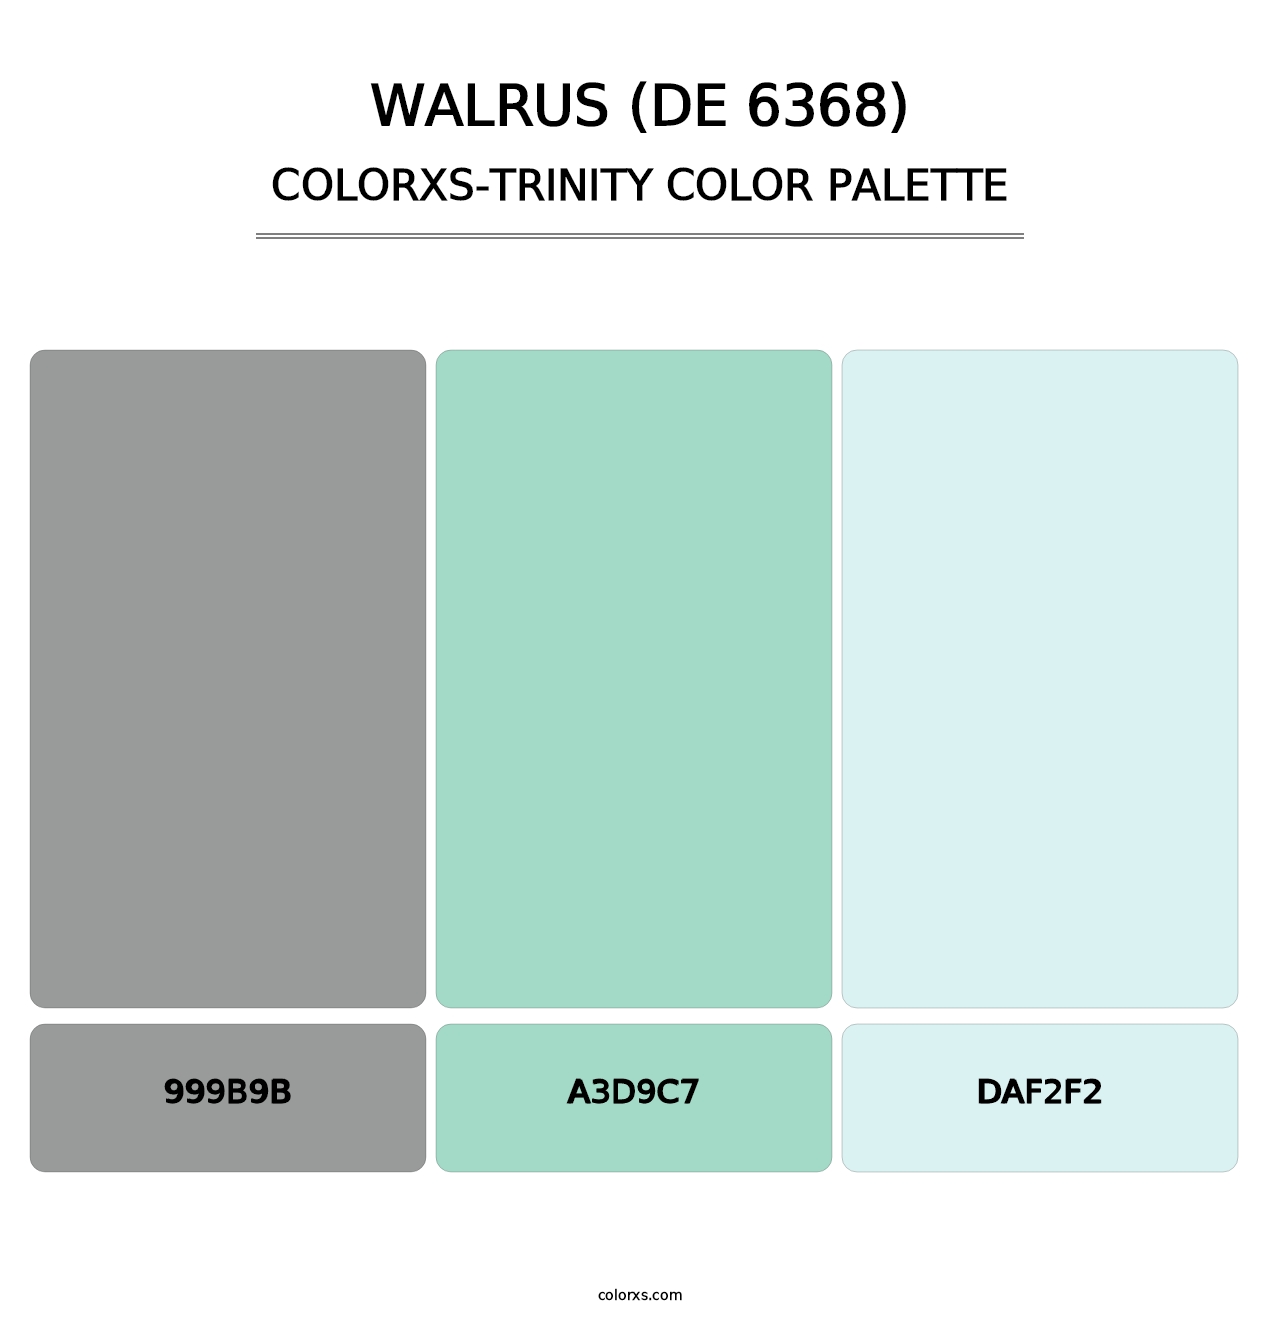 Walrus (DE 6368) - Colorxs Trinity Palette